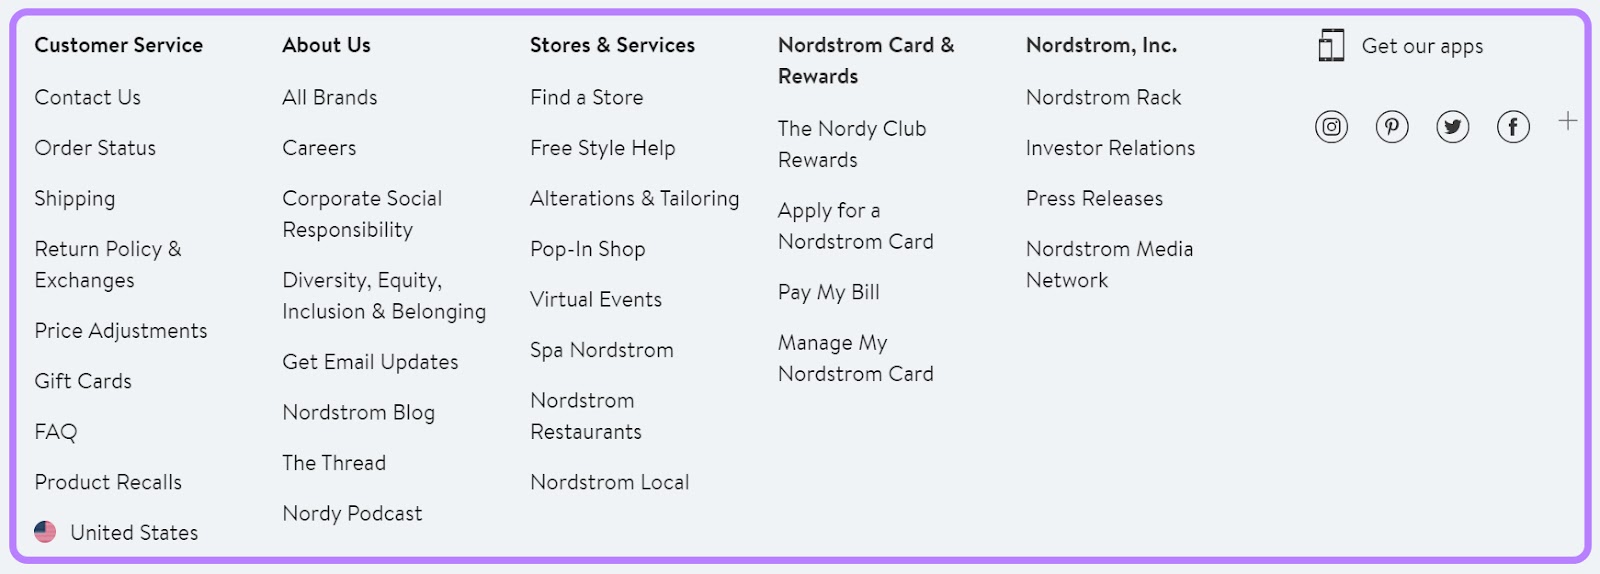 Nordstrom's website navigation